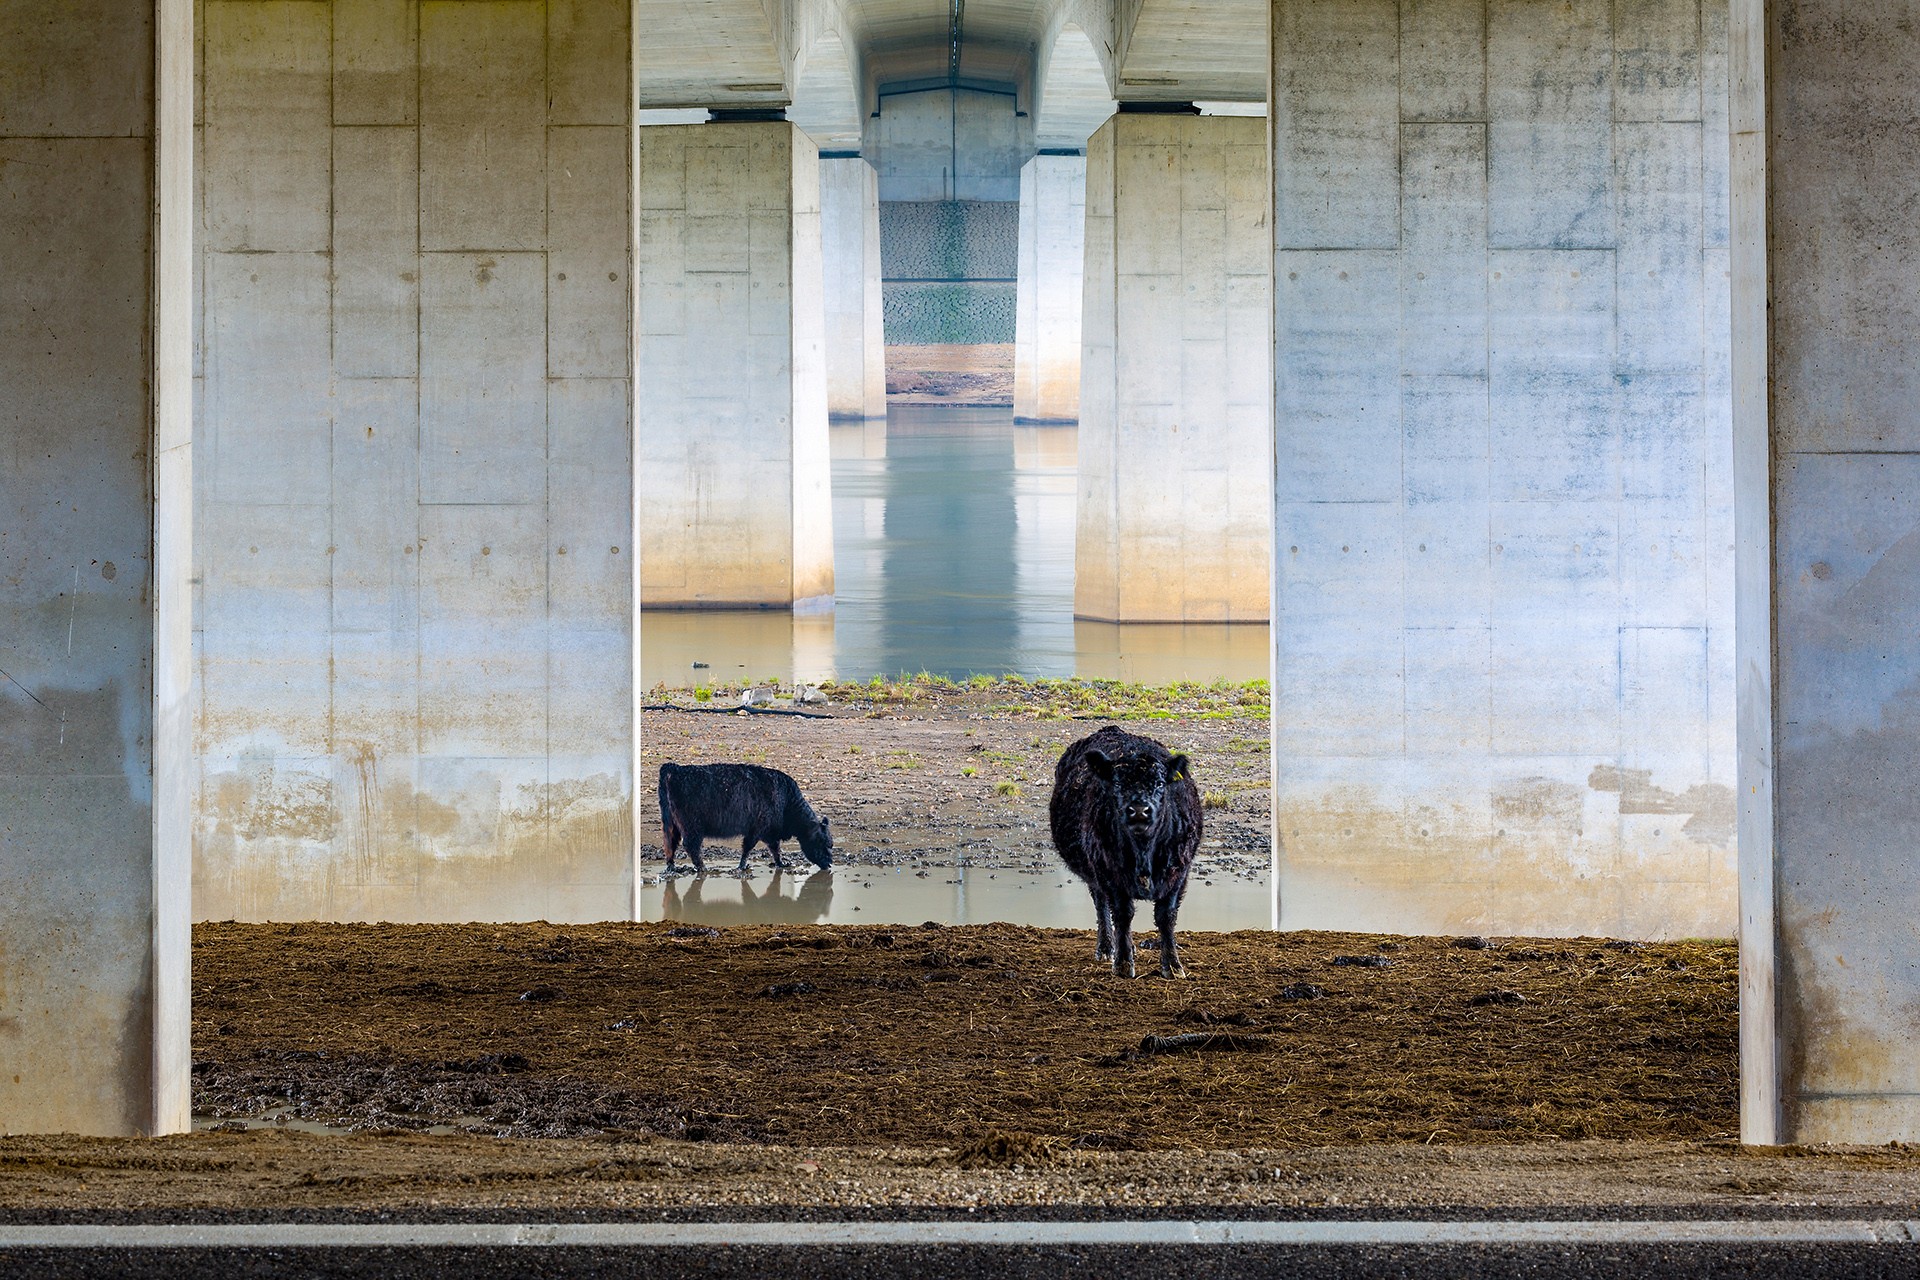 Победитель в категории Пейзажи низменностей. Галловейскте коровы под мостом. Автор Карин де Йонге